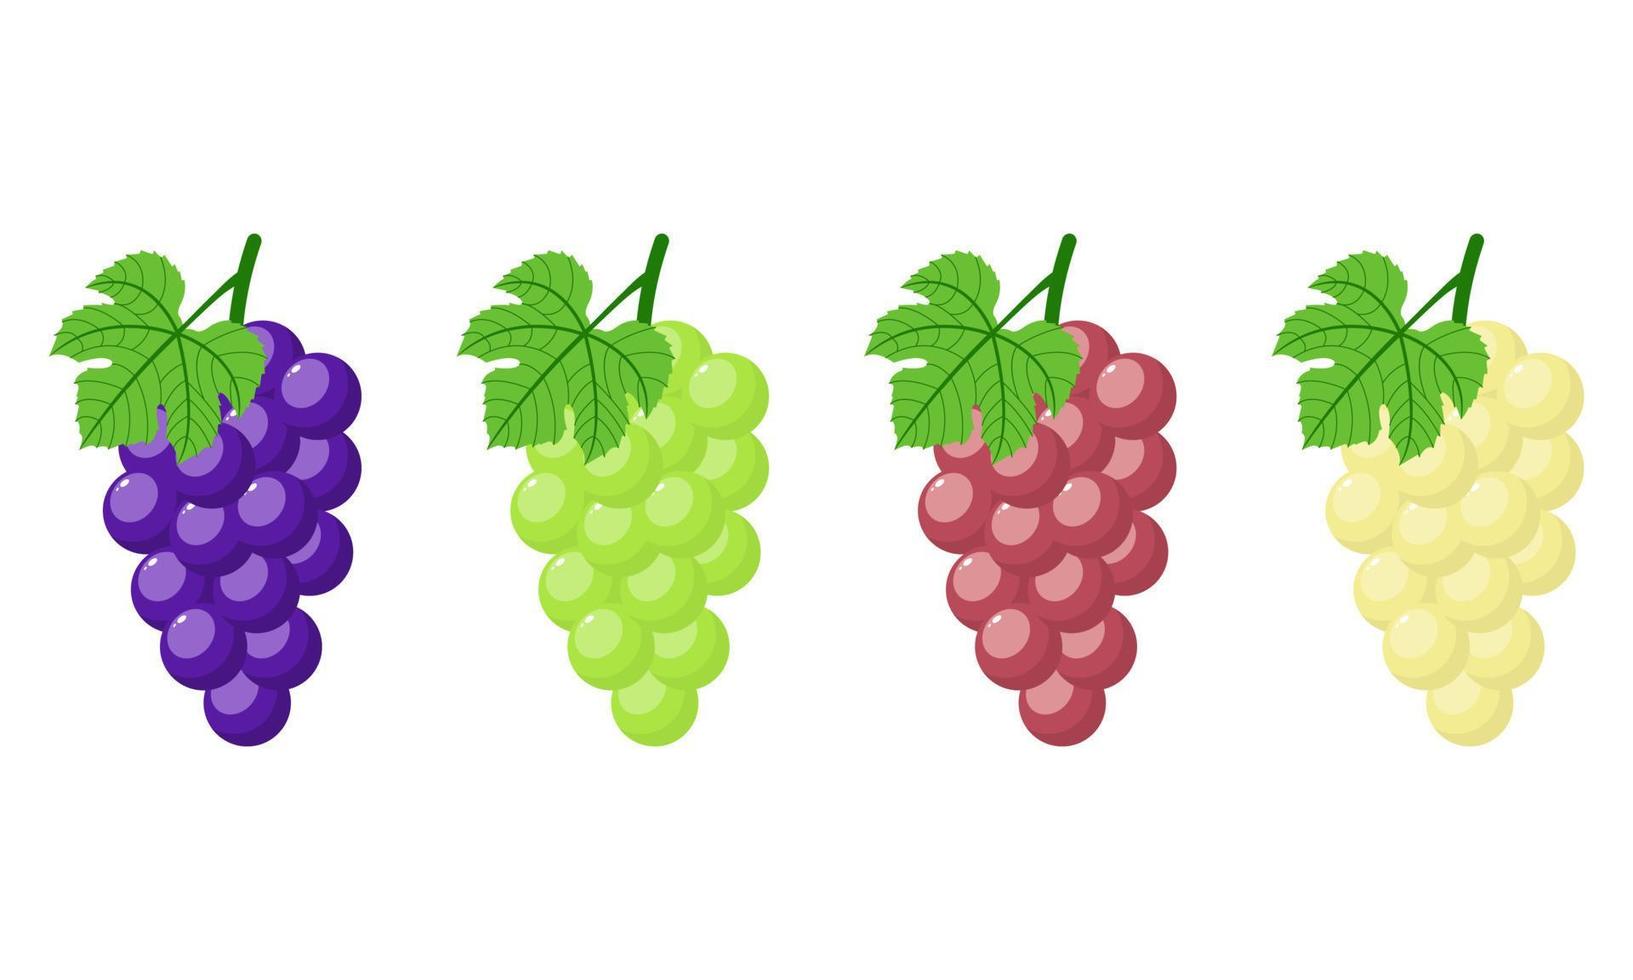 Reihe von verschiedenen Trauben isoliert auf weißem Hintergrund. bündel lila, grün, rot, weiße trauben mit stiel und blatt. Cartoon-Stil. Vektorillustration für jedes Design vektor